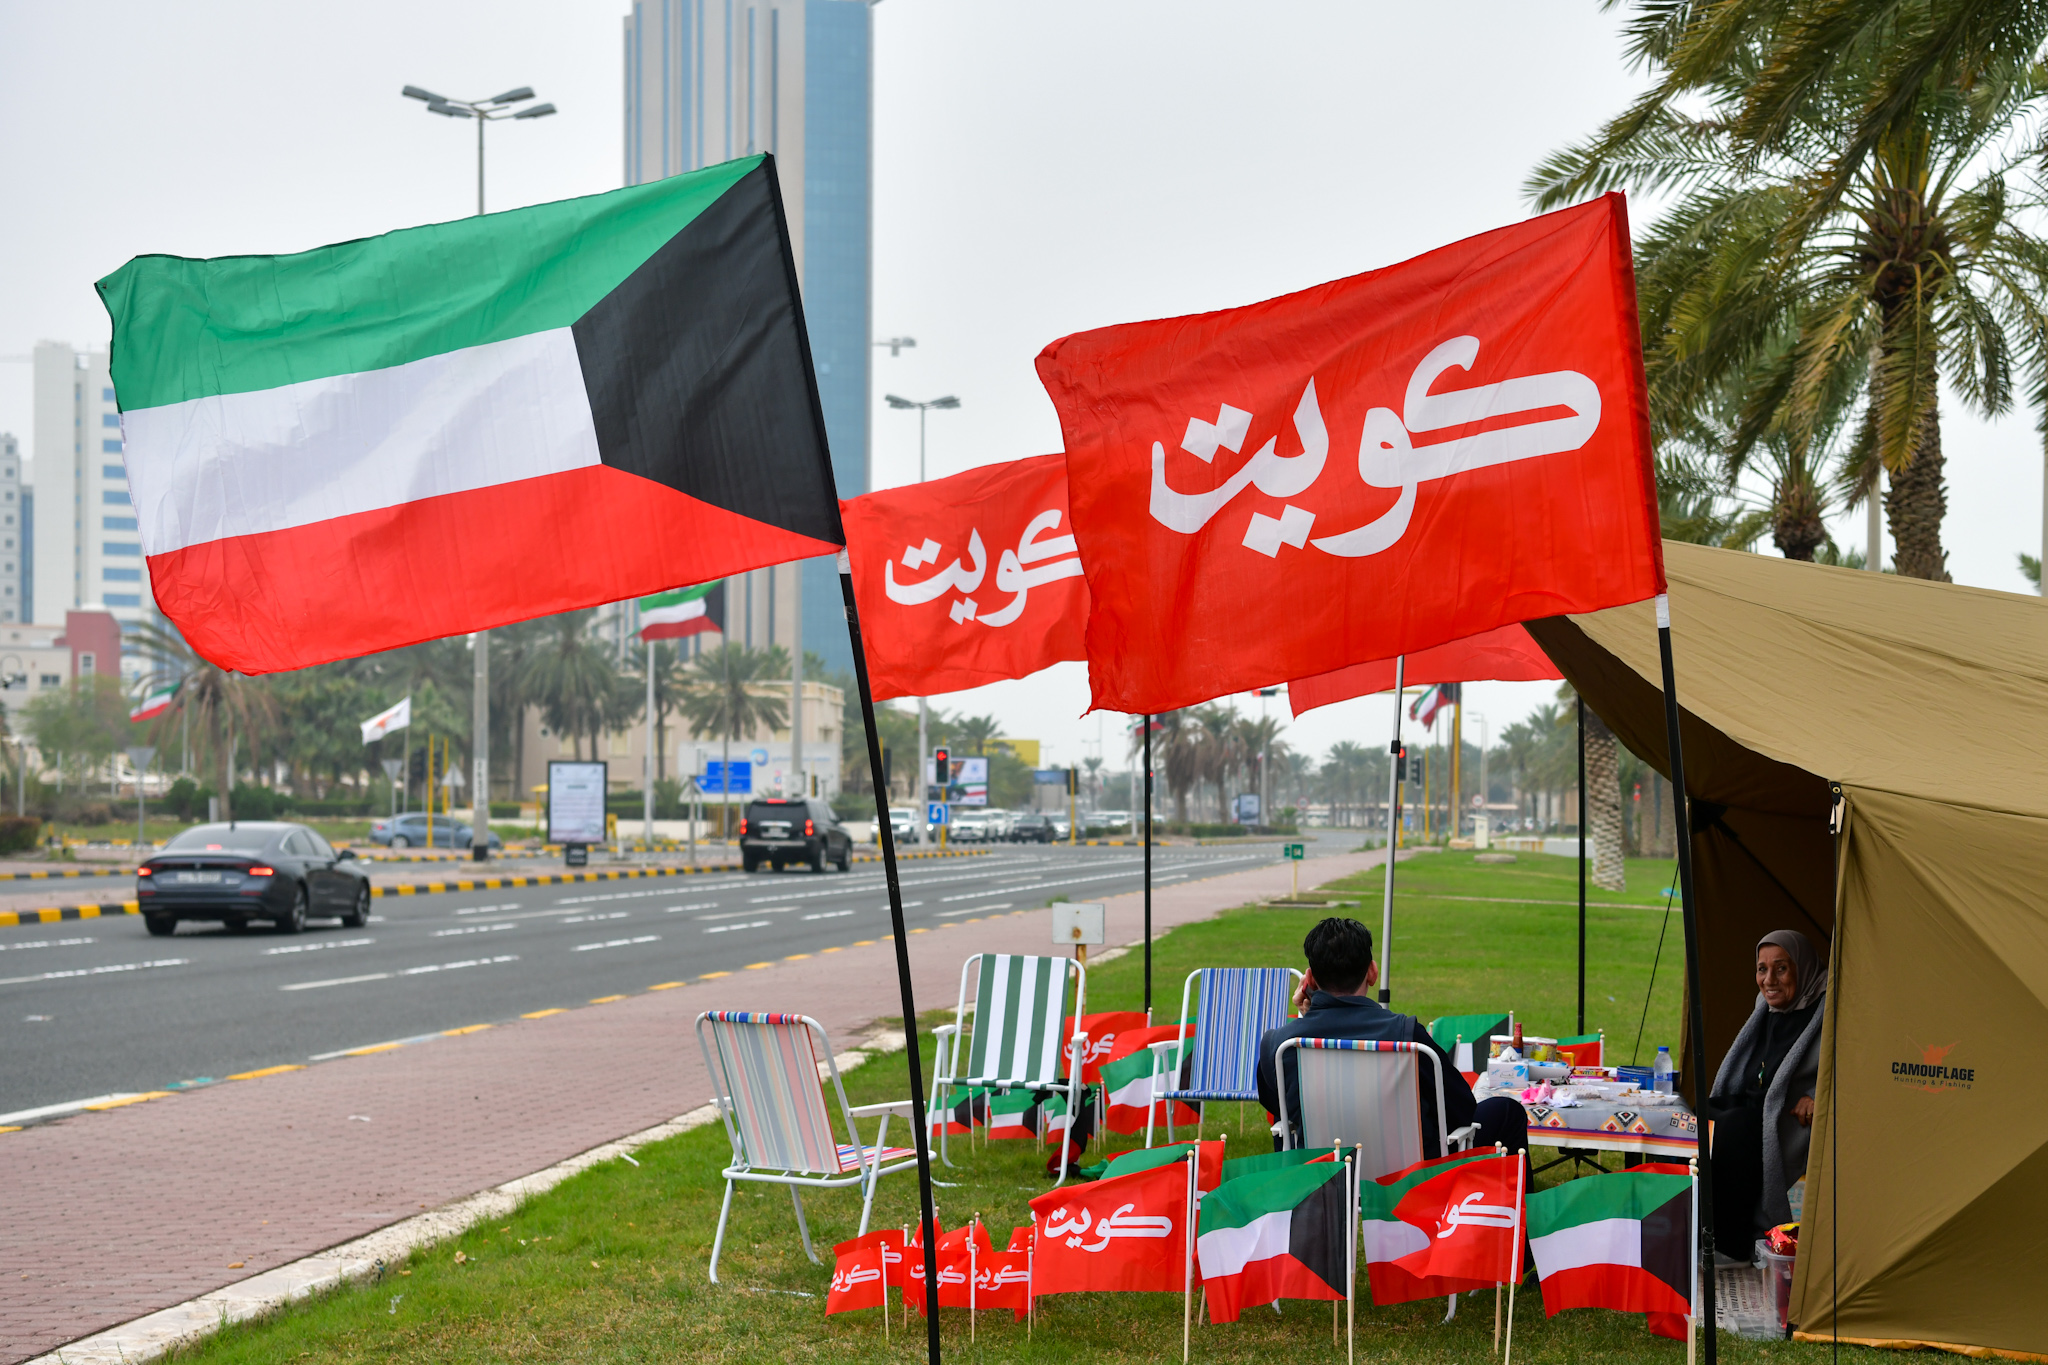  أعلام الكويت تزين شارع الخليج العربي في جو من البهجة والسعادة بالأعياد الوطنية